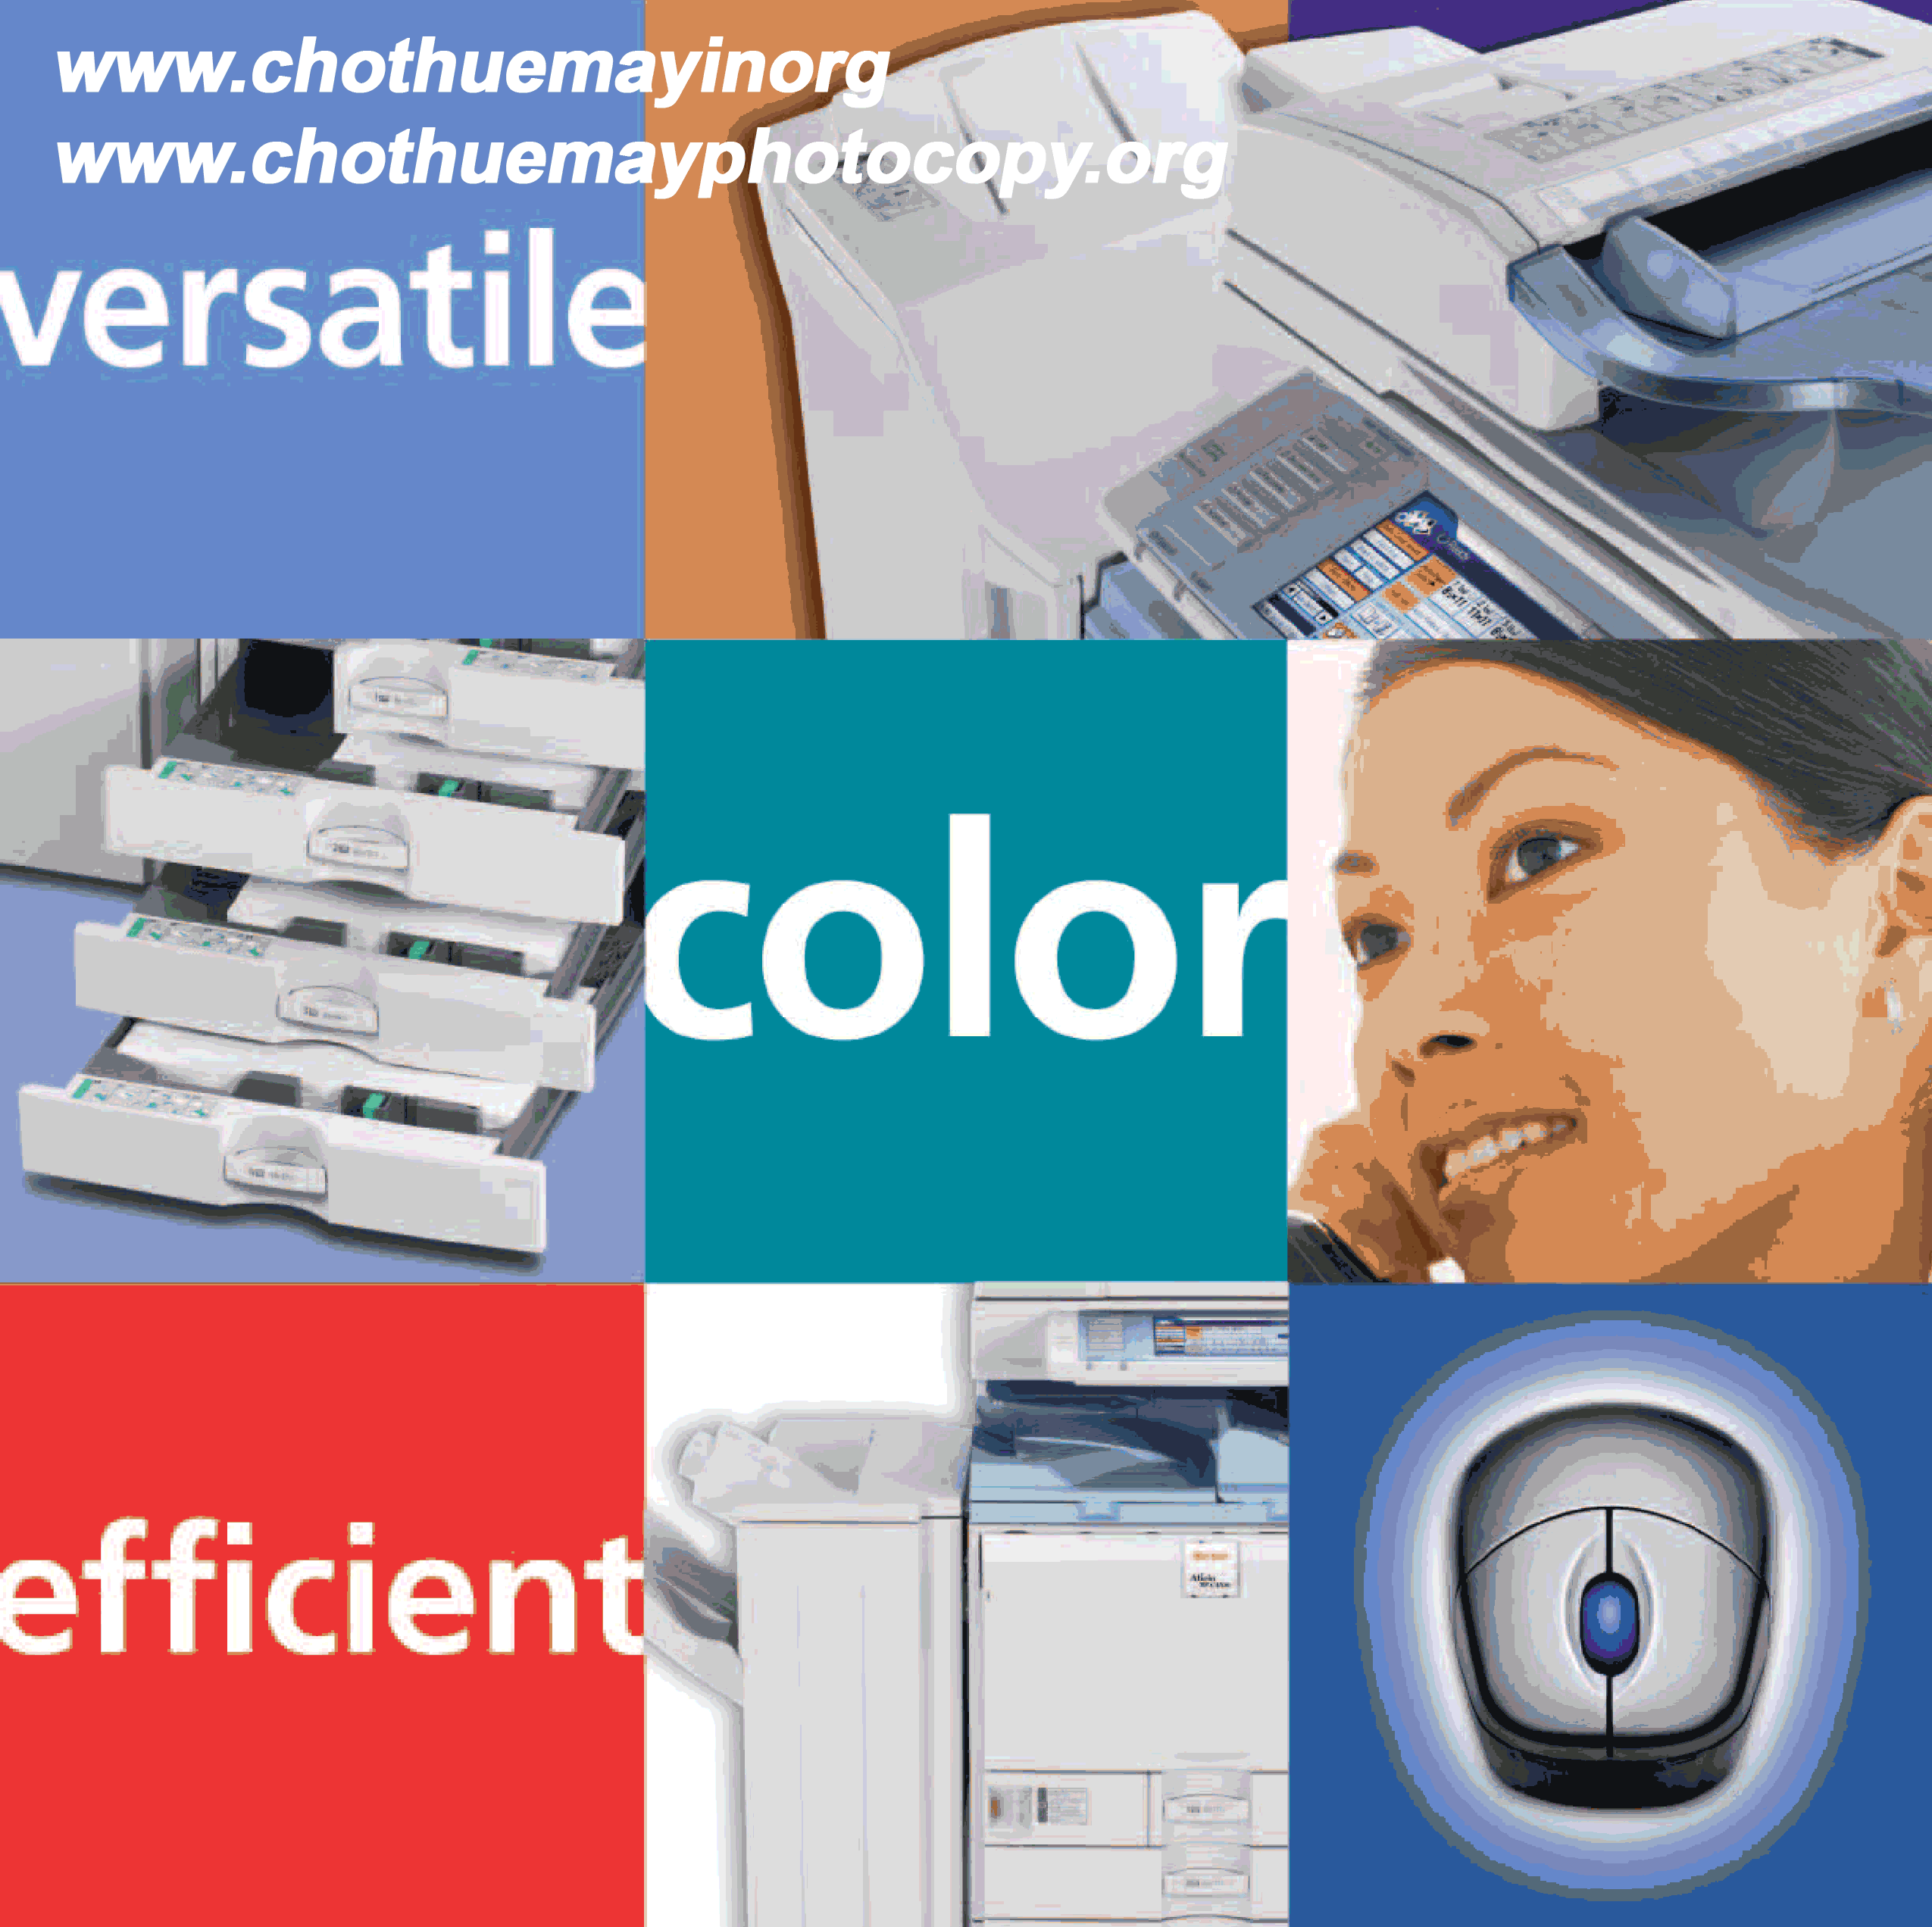 Dịch vụ cho thuê máy photocopy tại các tỉnh ĐBSCL